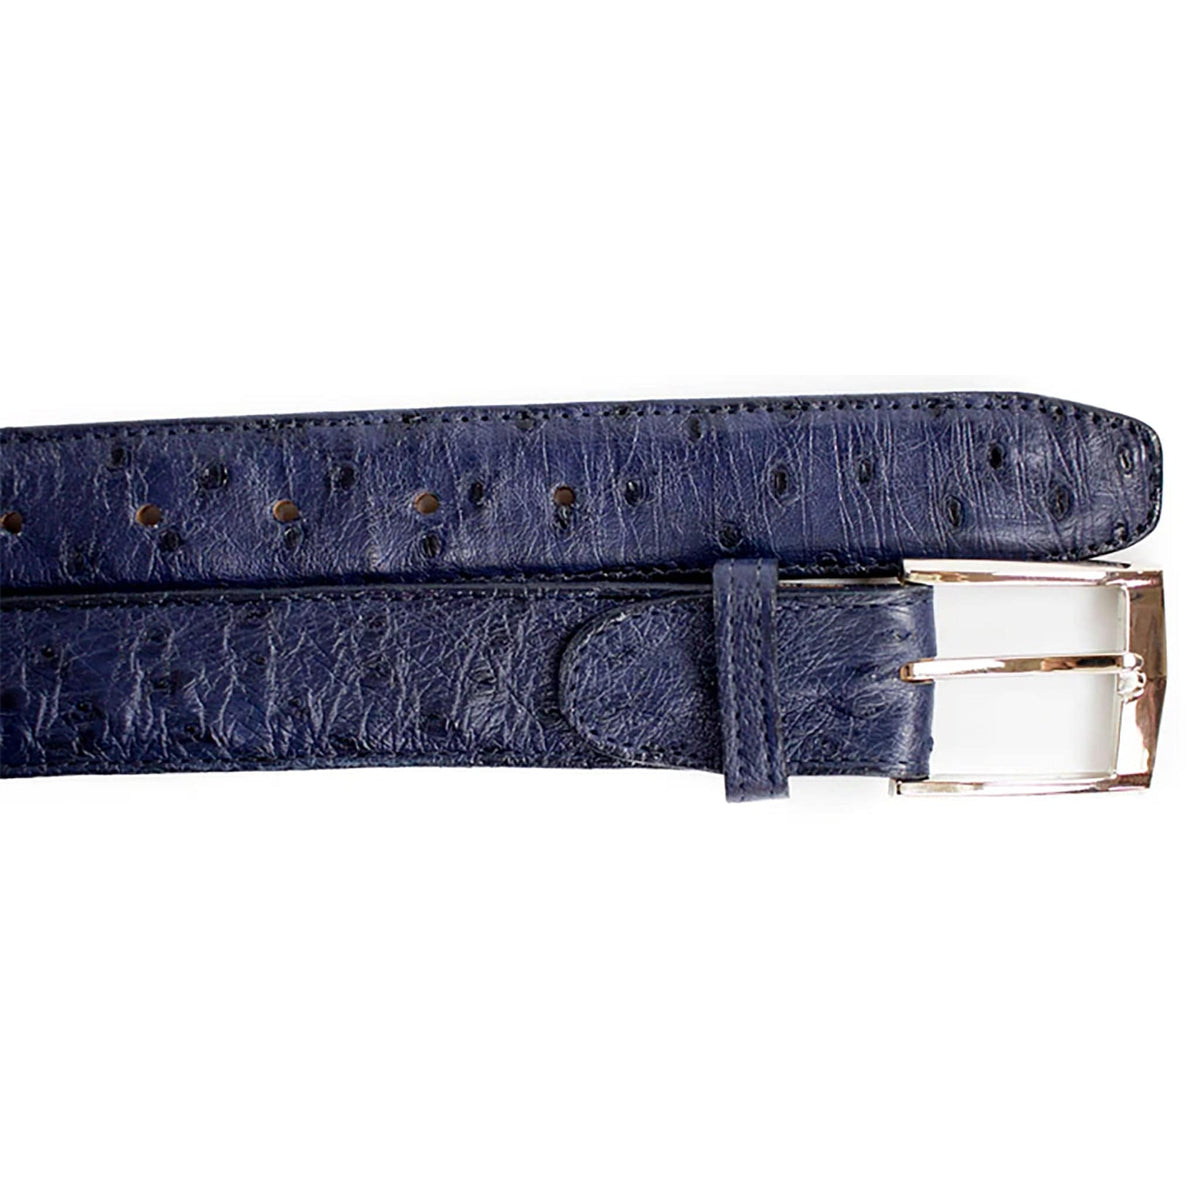 Belvedere Shoes Belts NAVY / 44 Belvedere-Ostrich Quill Belt